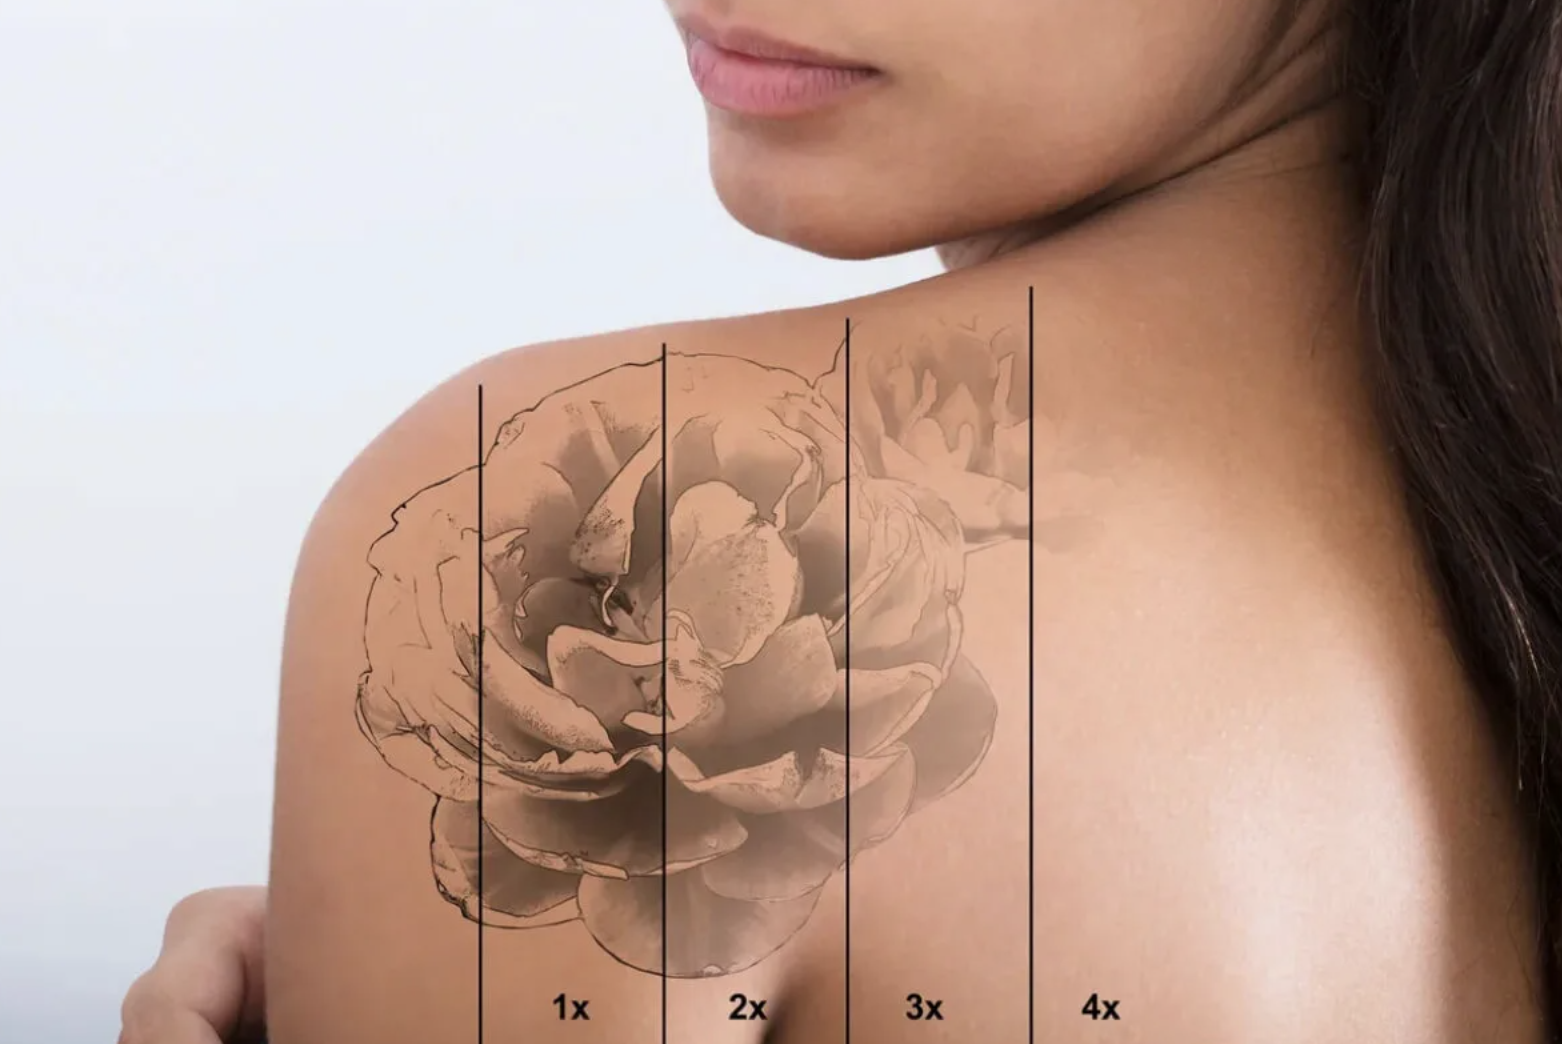 Размеры татуировок - как узнать стоимость